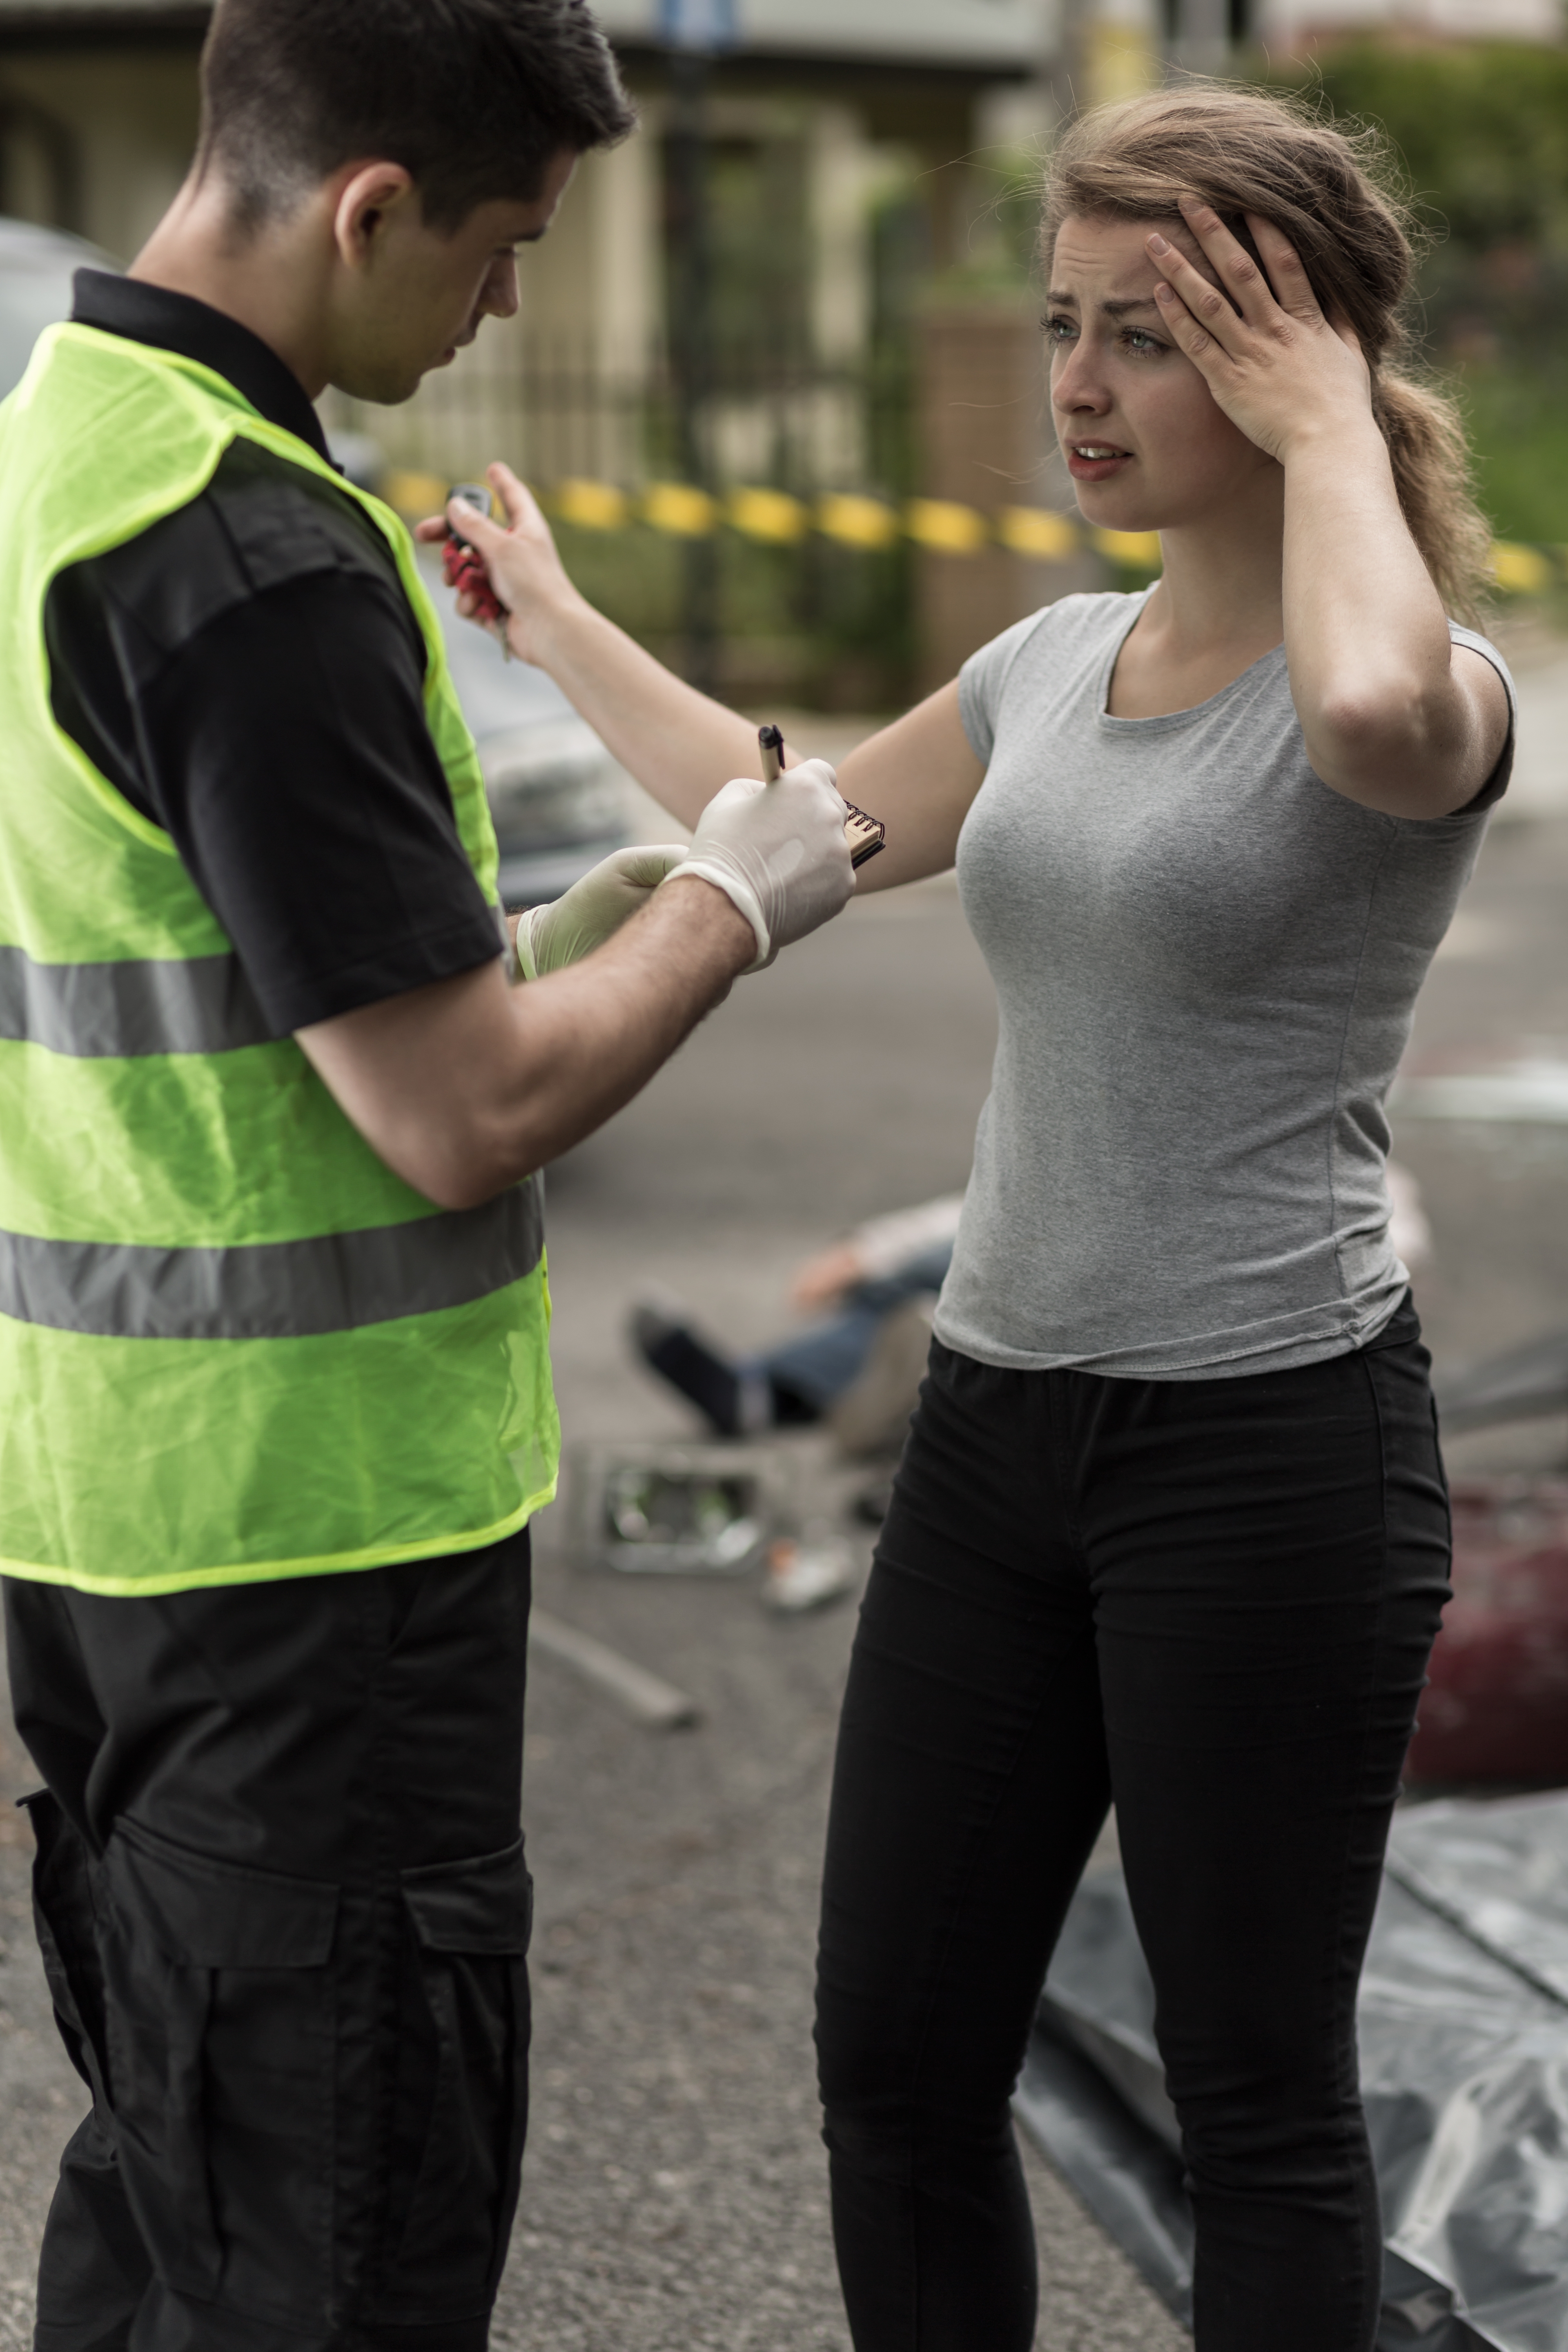 Eine Frau macht eine Aussage vor einem Polizeibeamten. | Quelle: Shutterstock